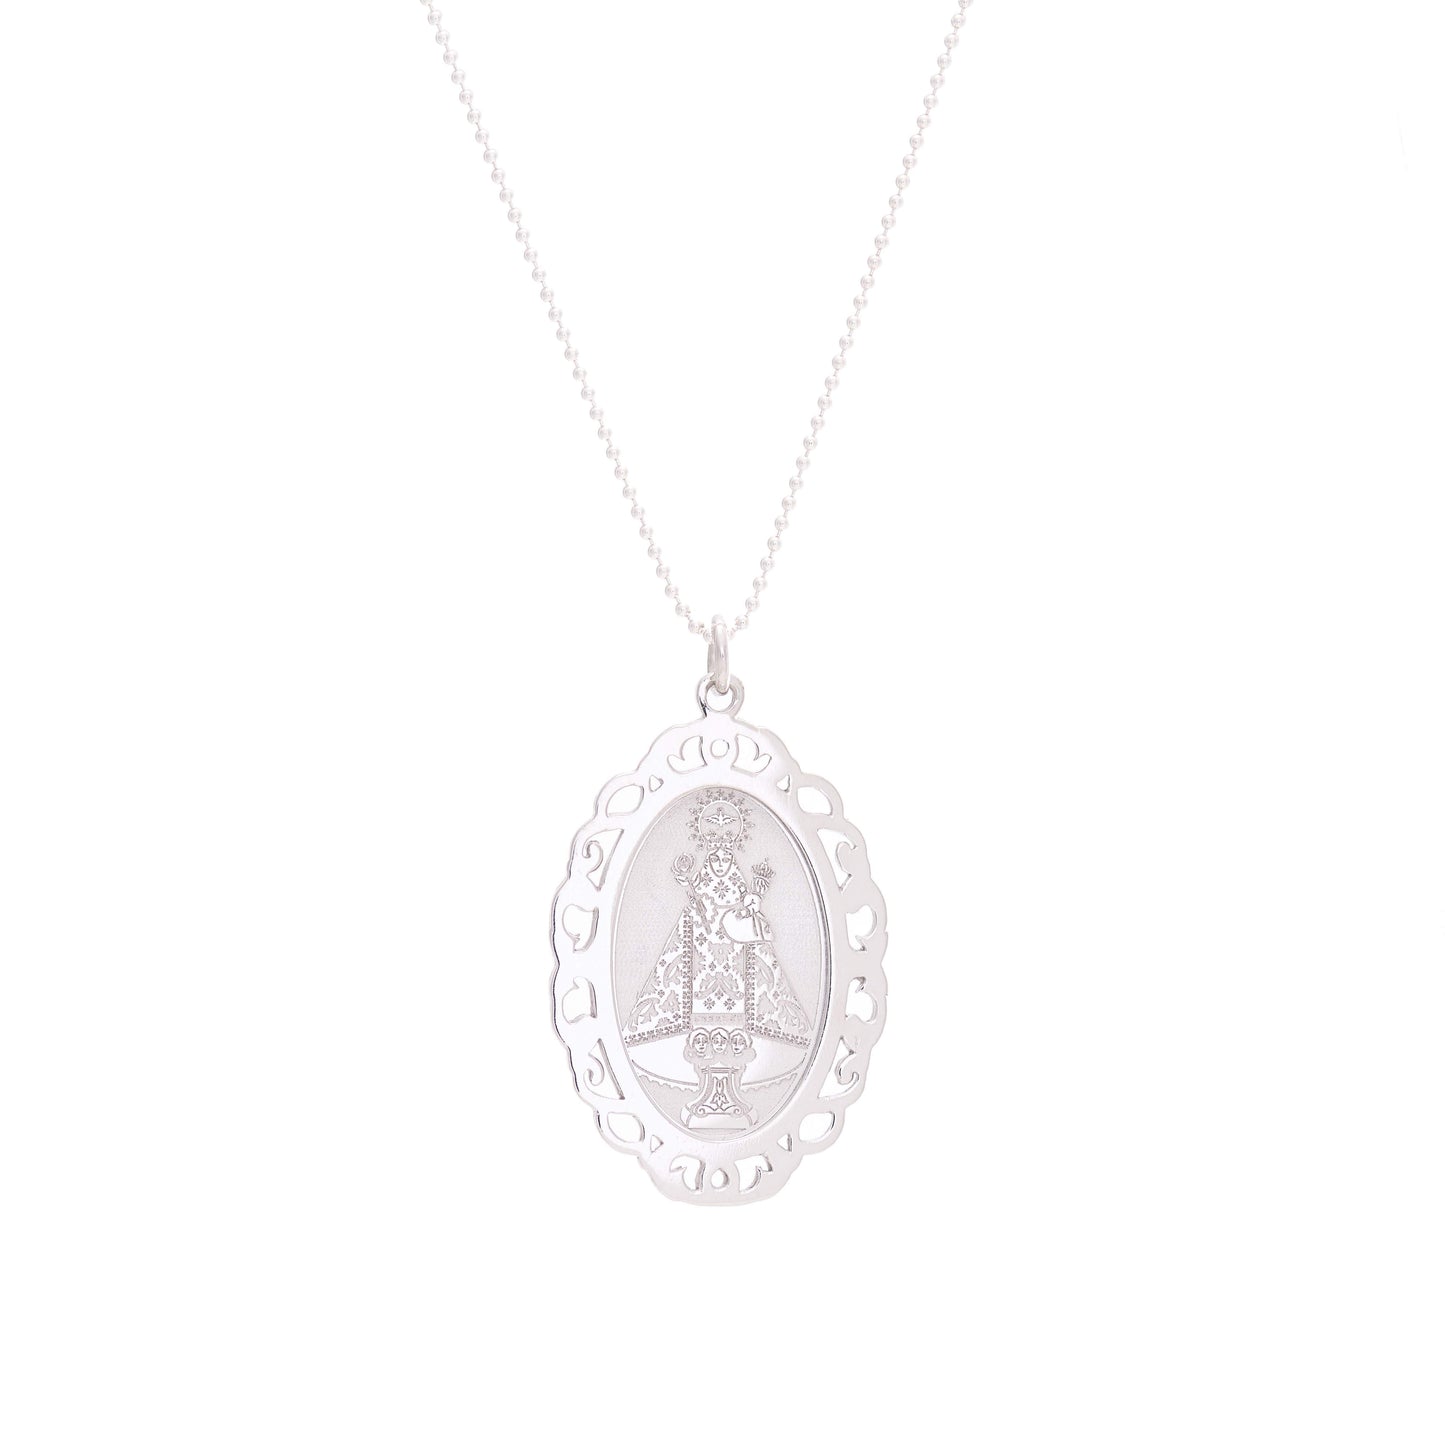 Virgin of Covadonga Medal